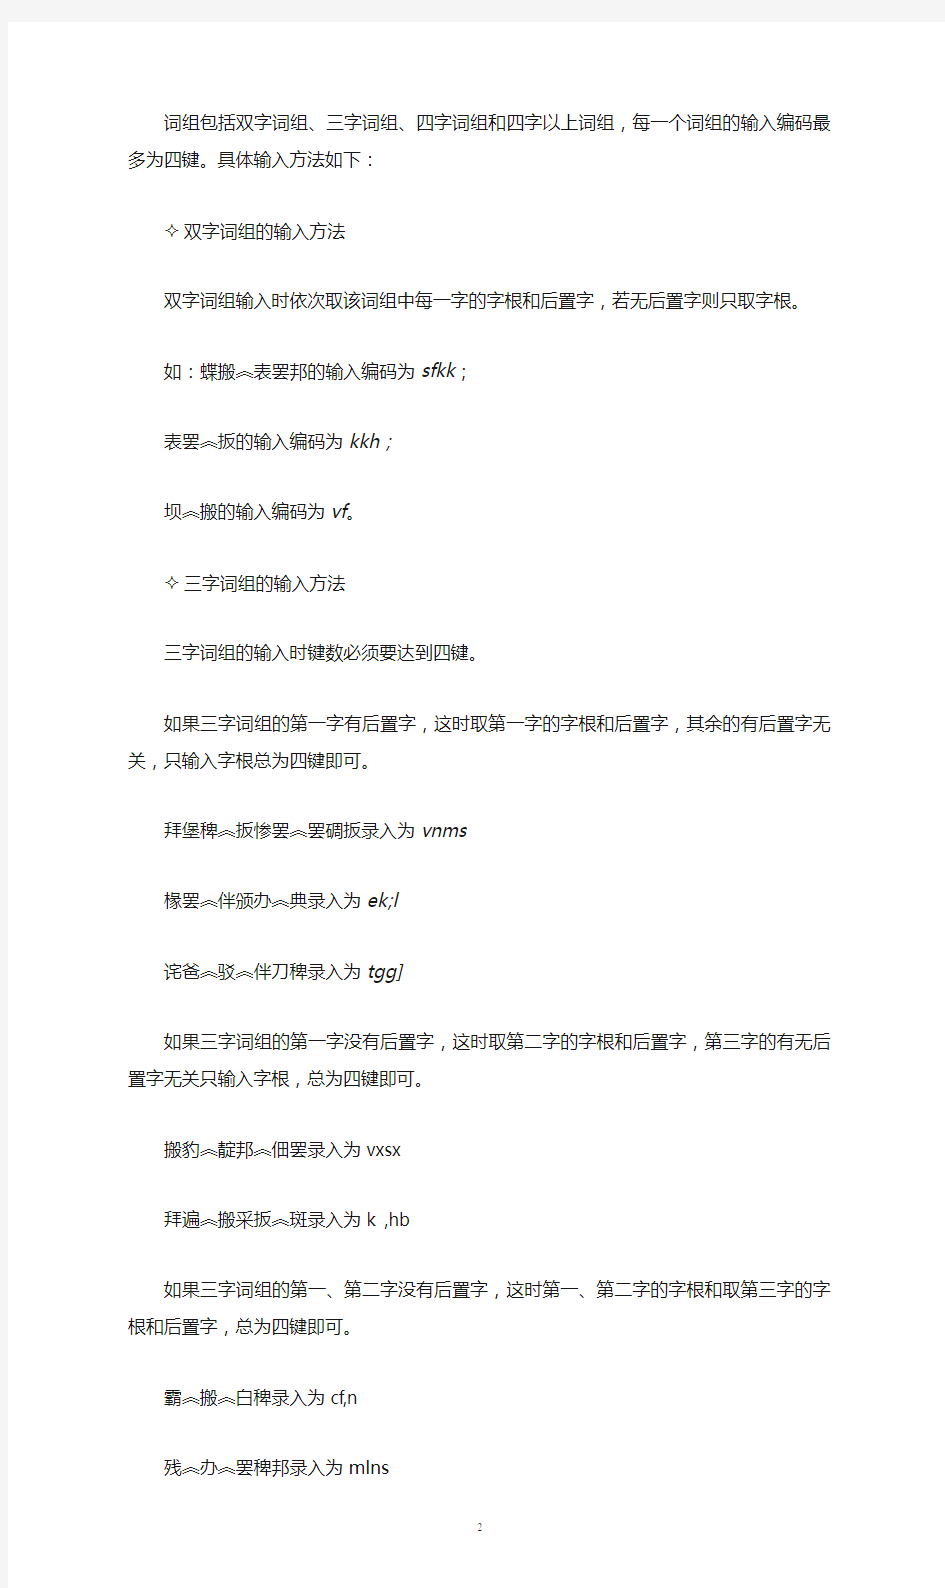 藏文输入法使用方法2